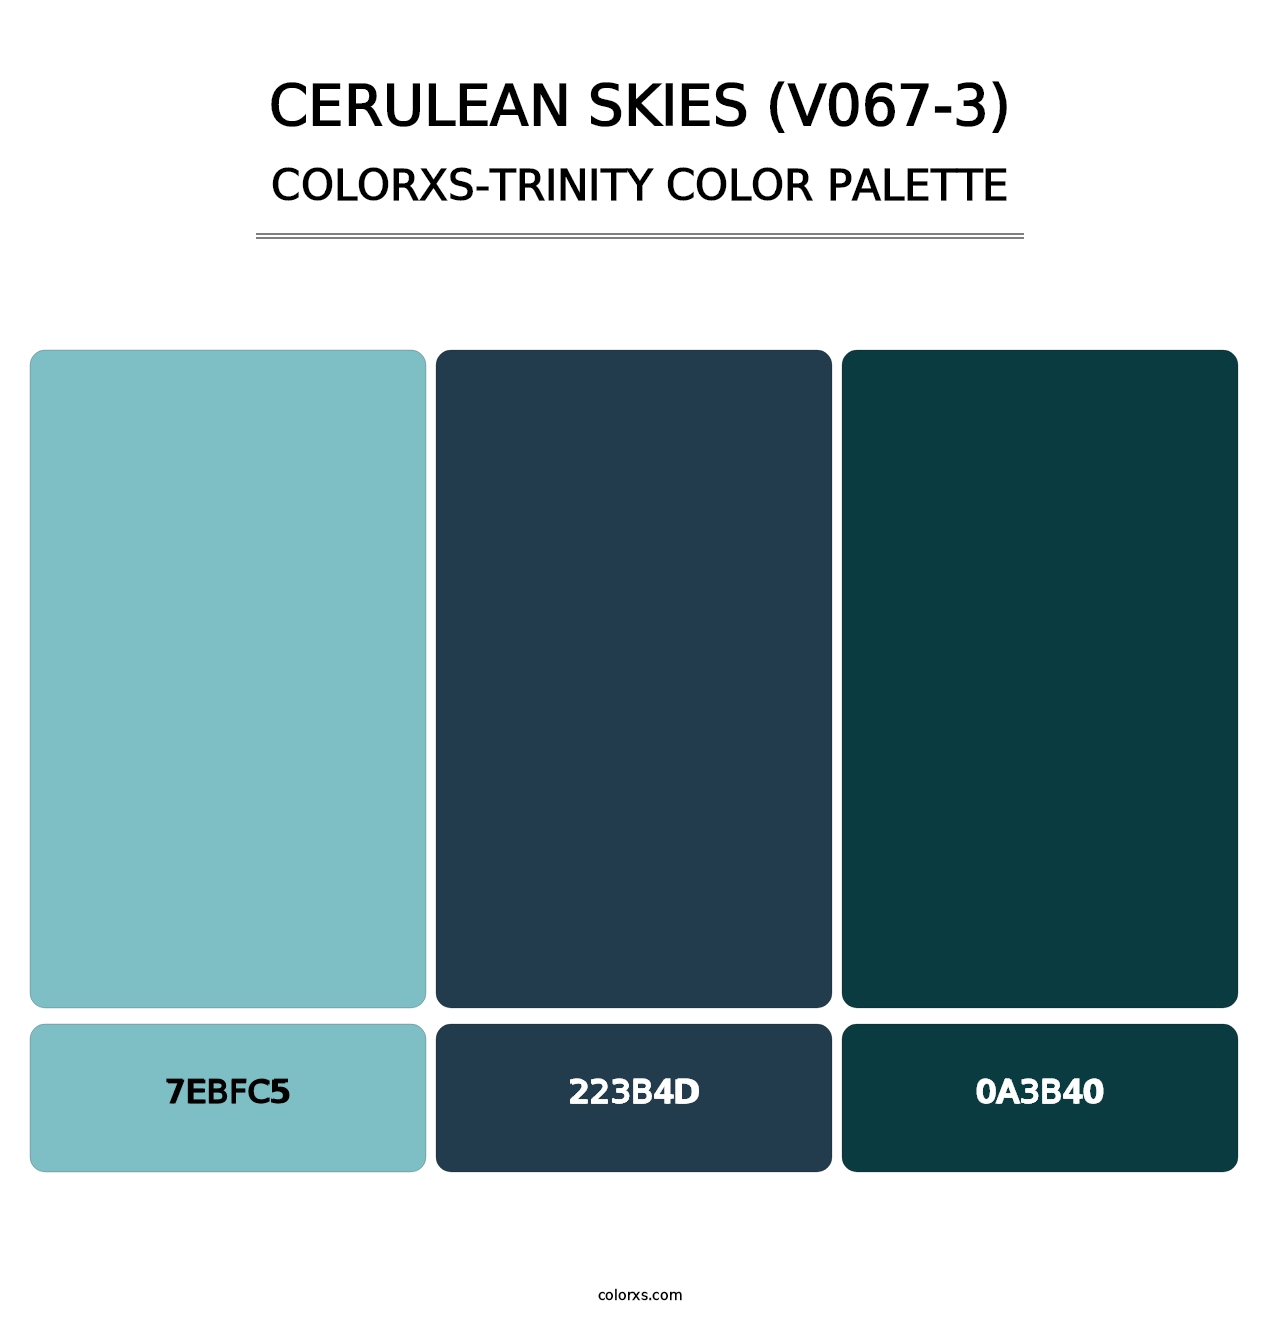 Cerulean Skies (V067-3) - Colorxs Trinity Palette